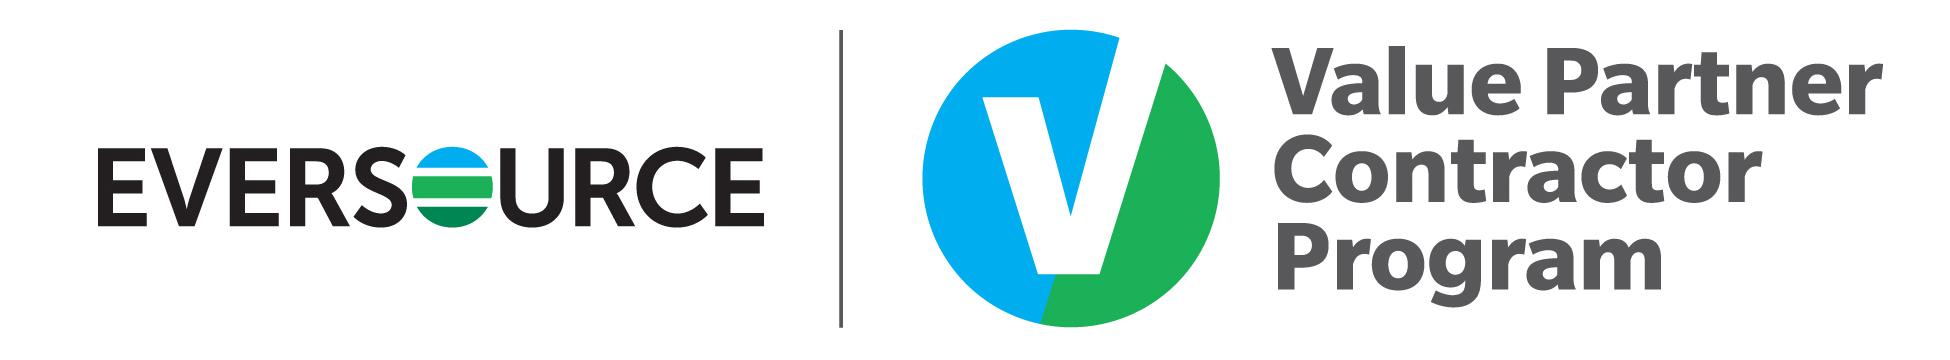 Eversource Value Partner Program Logo FINAL